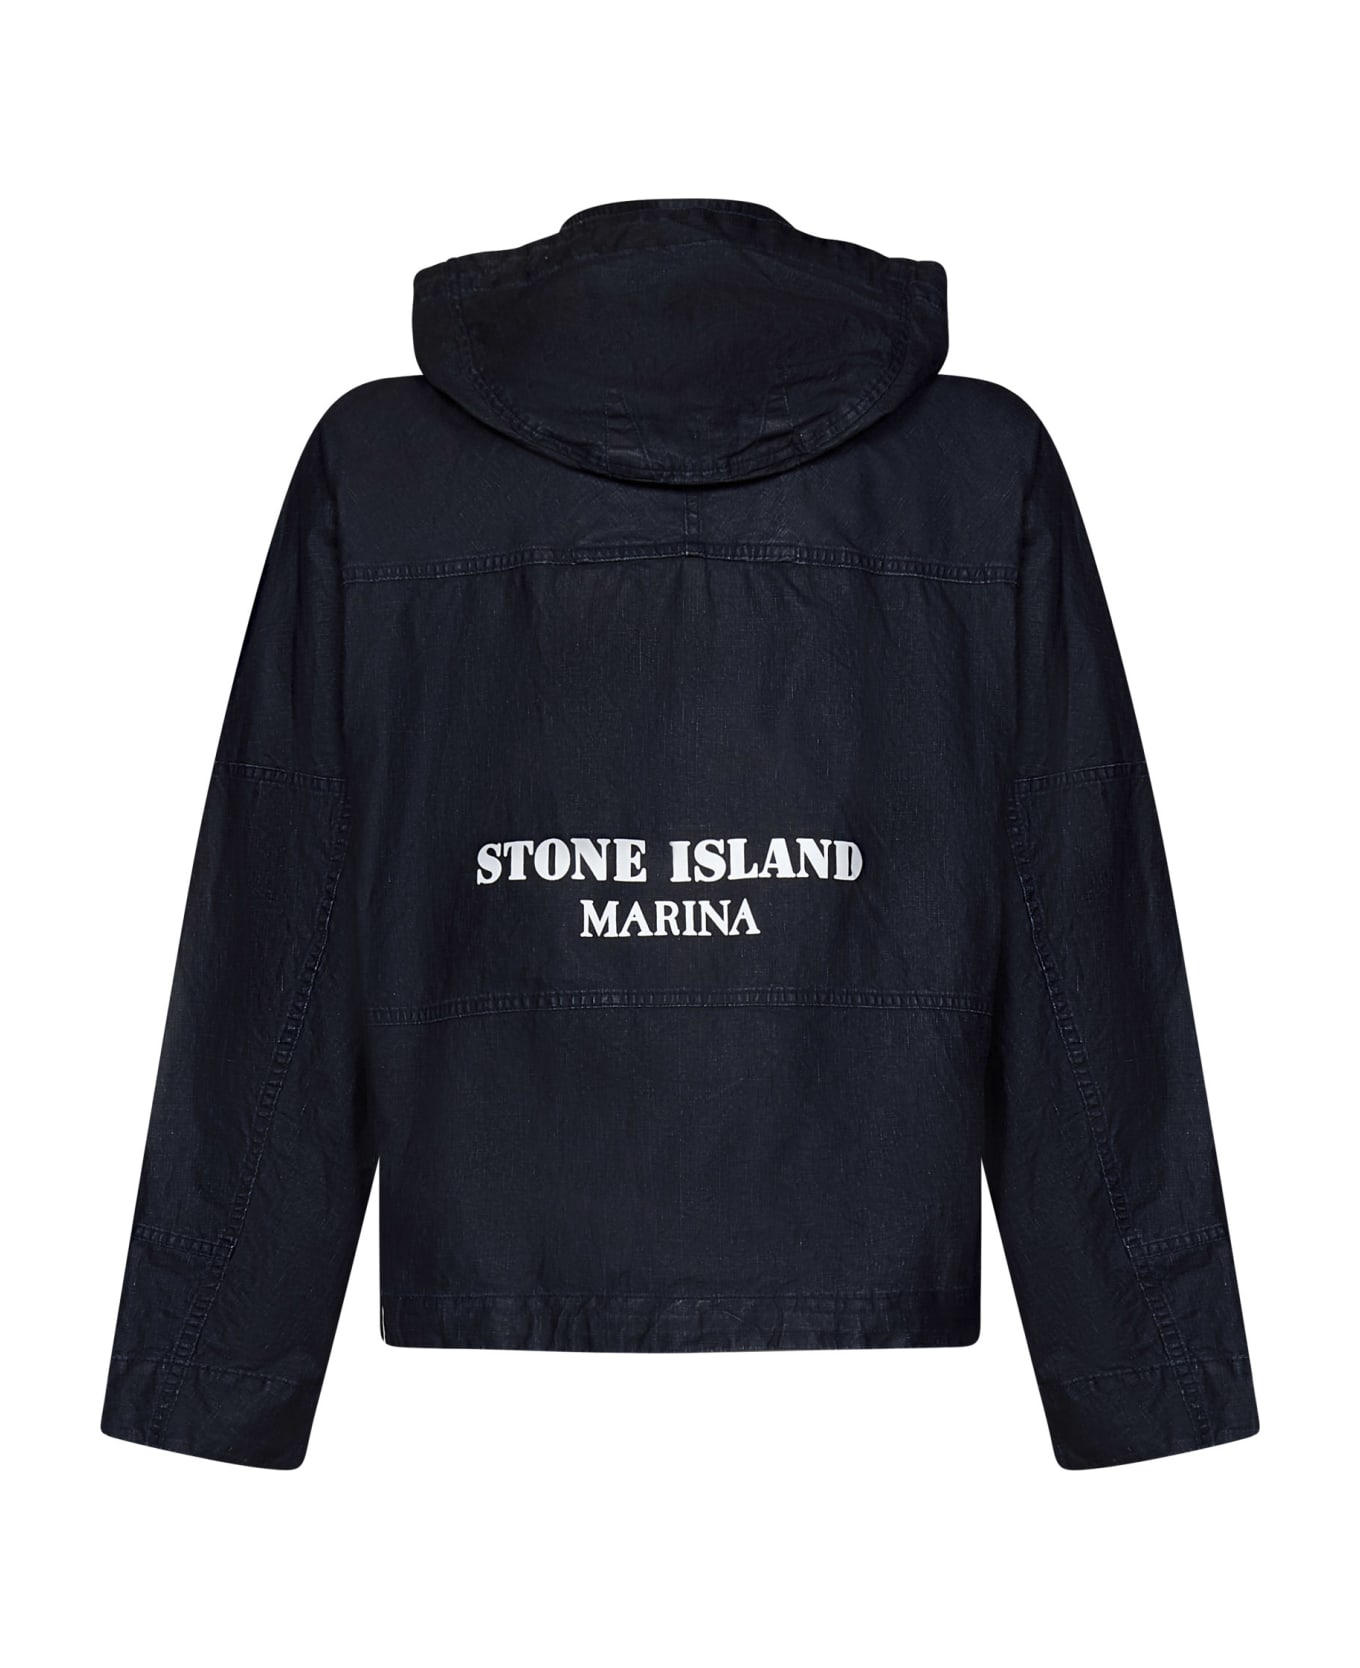 Stone Island Marina_raw Jacket - Blue ジャケット